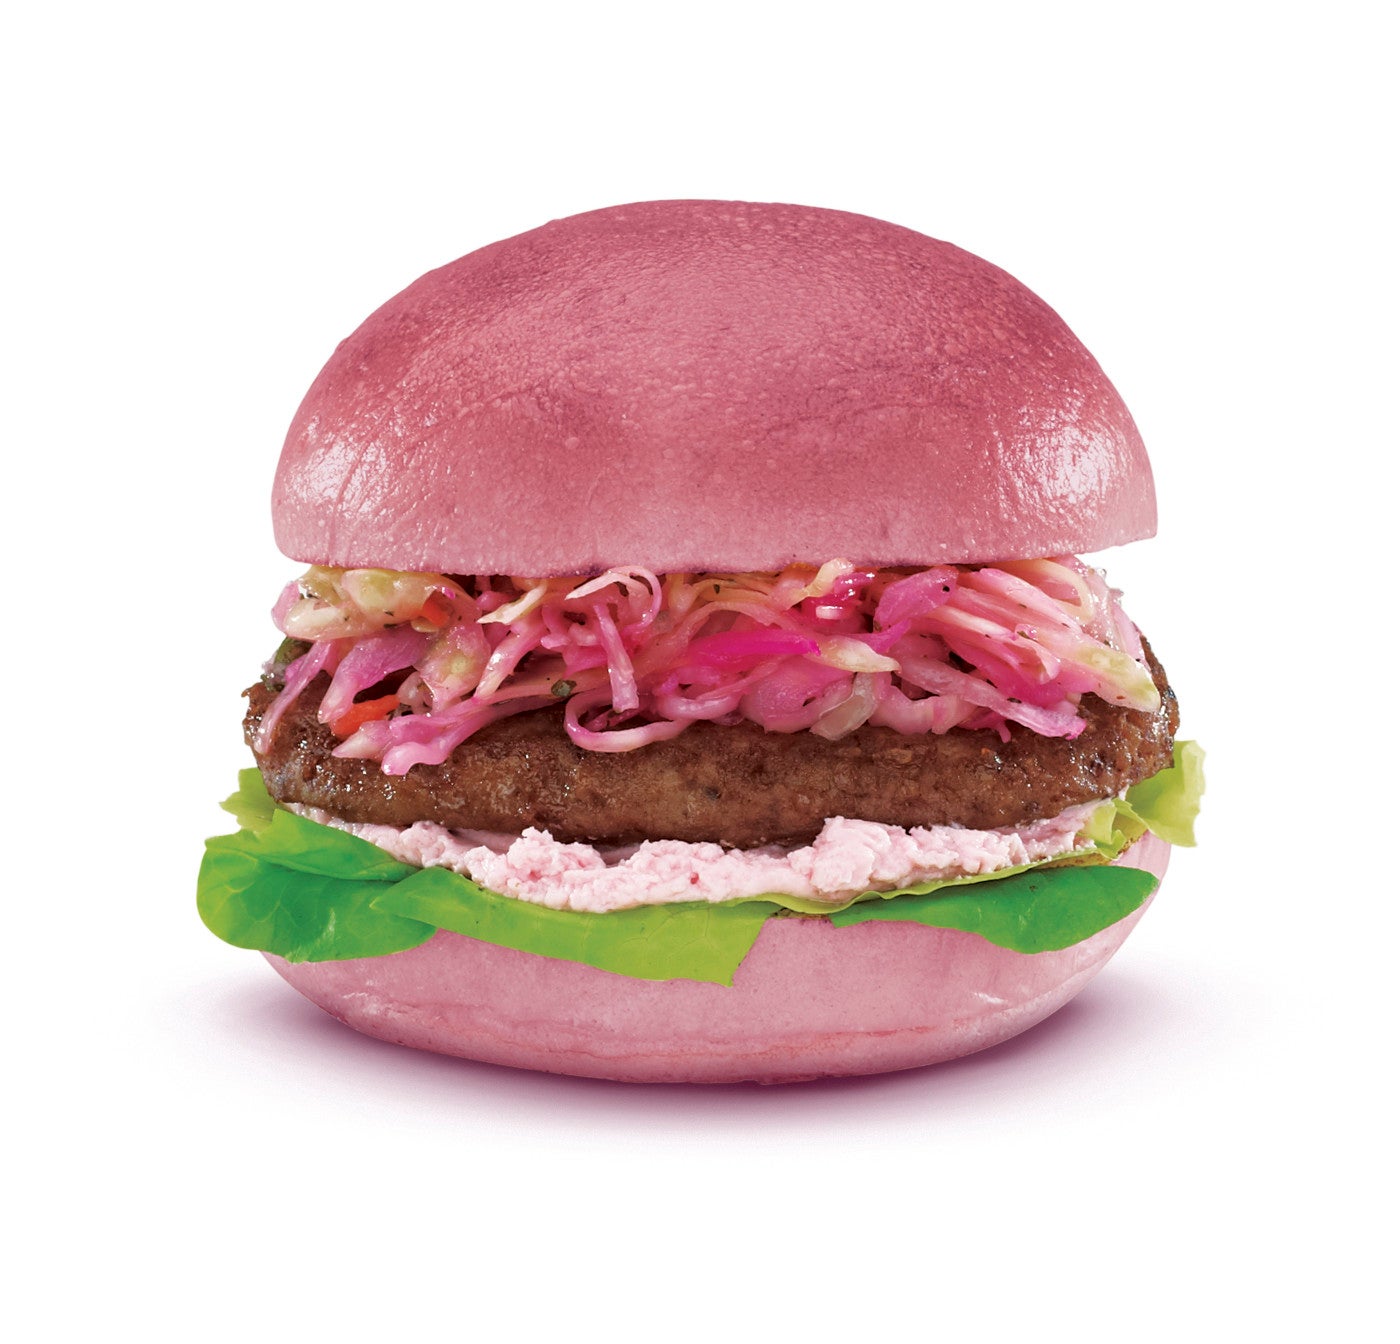 A pink-tinted hamburger